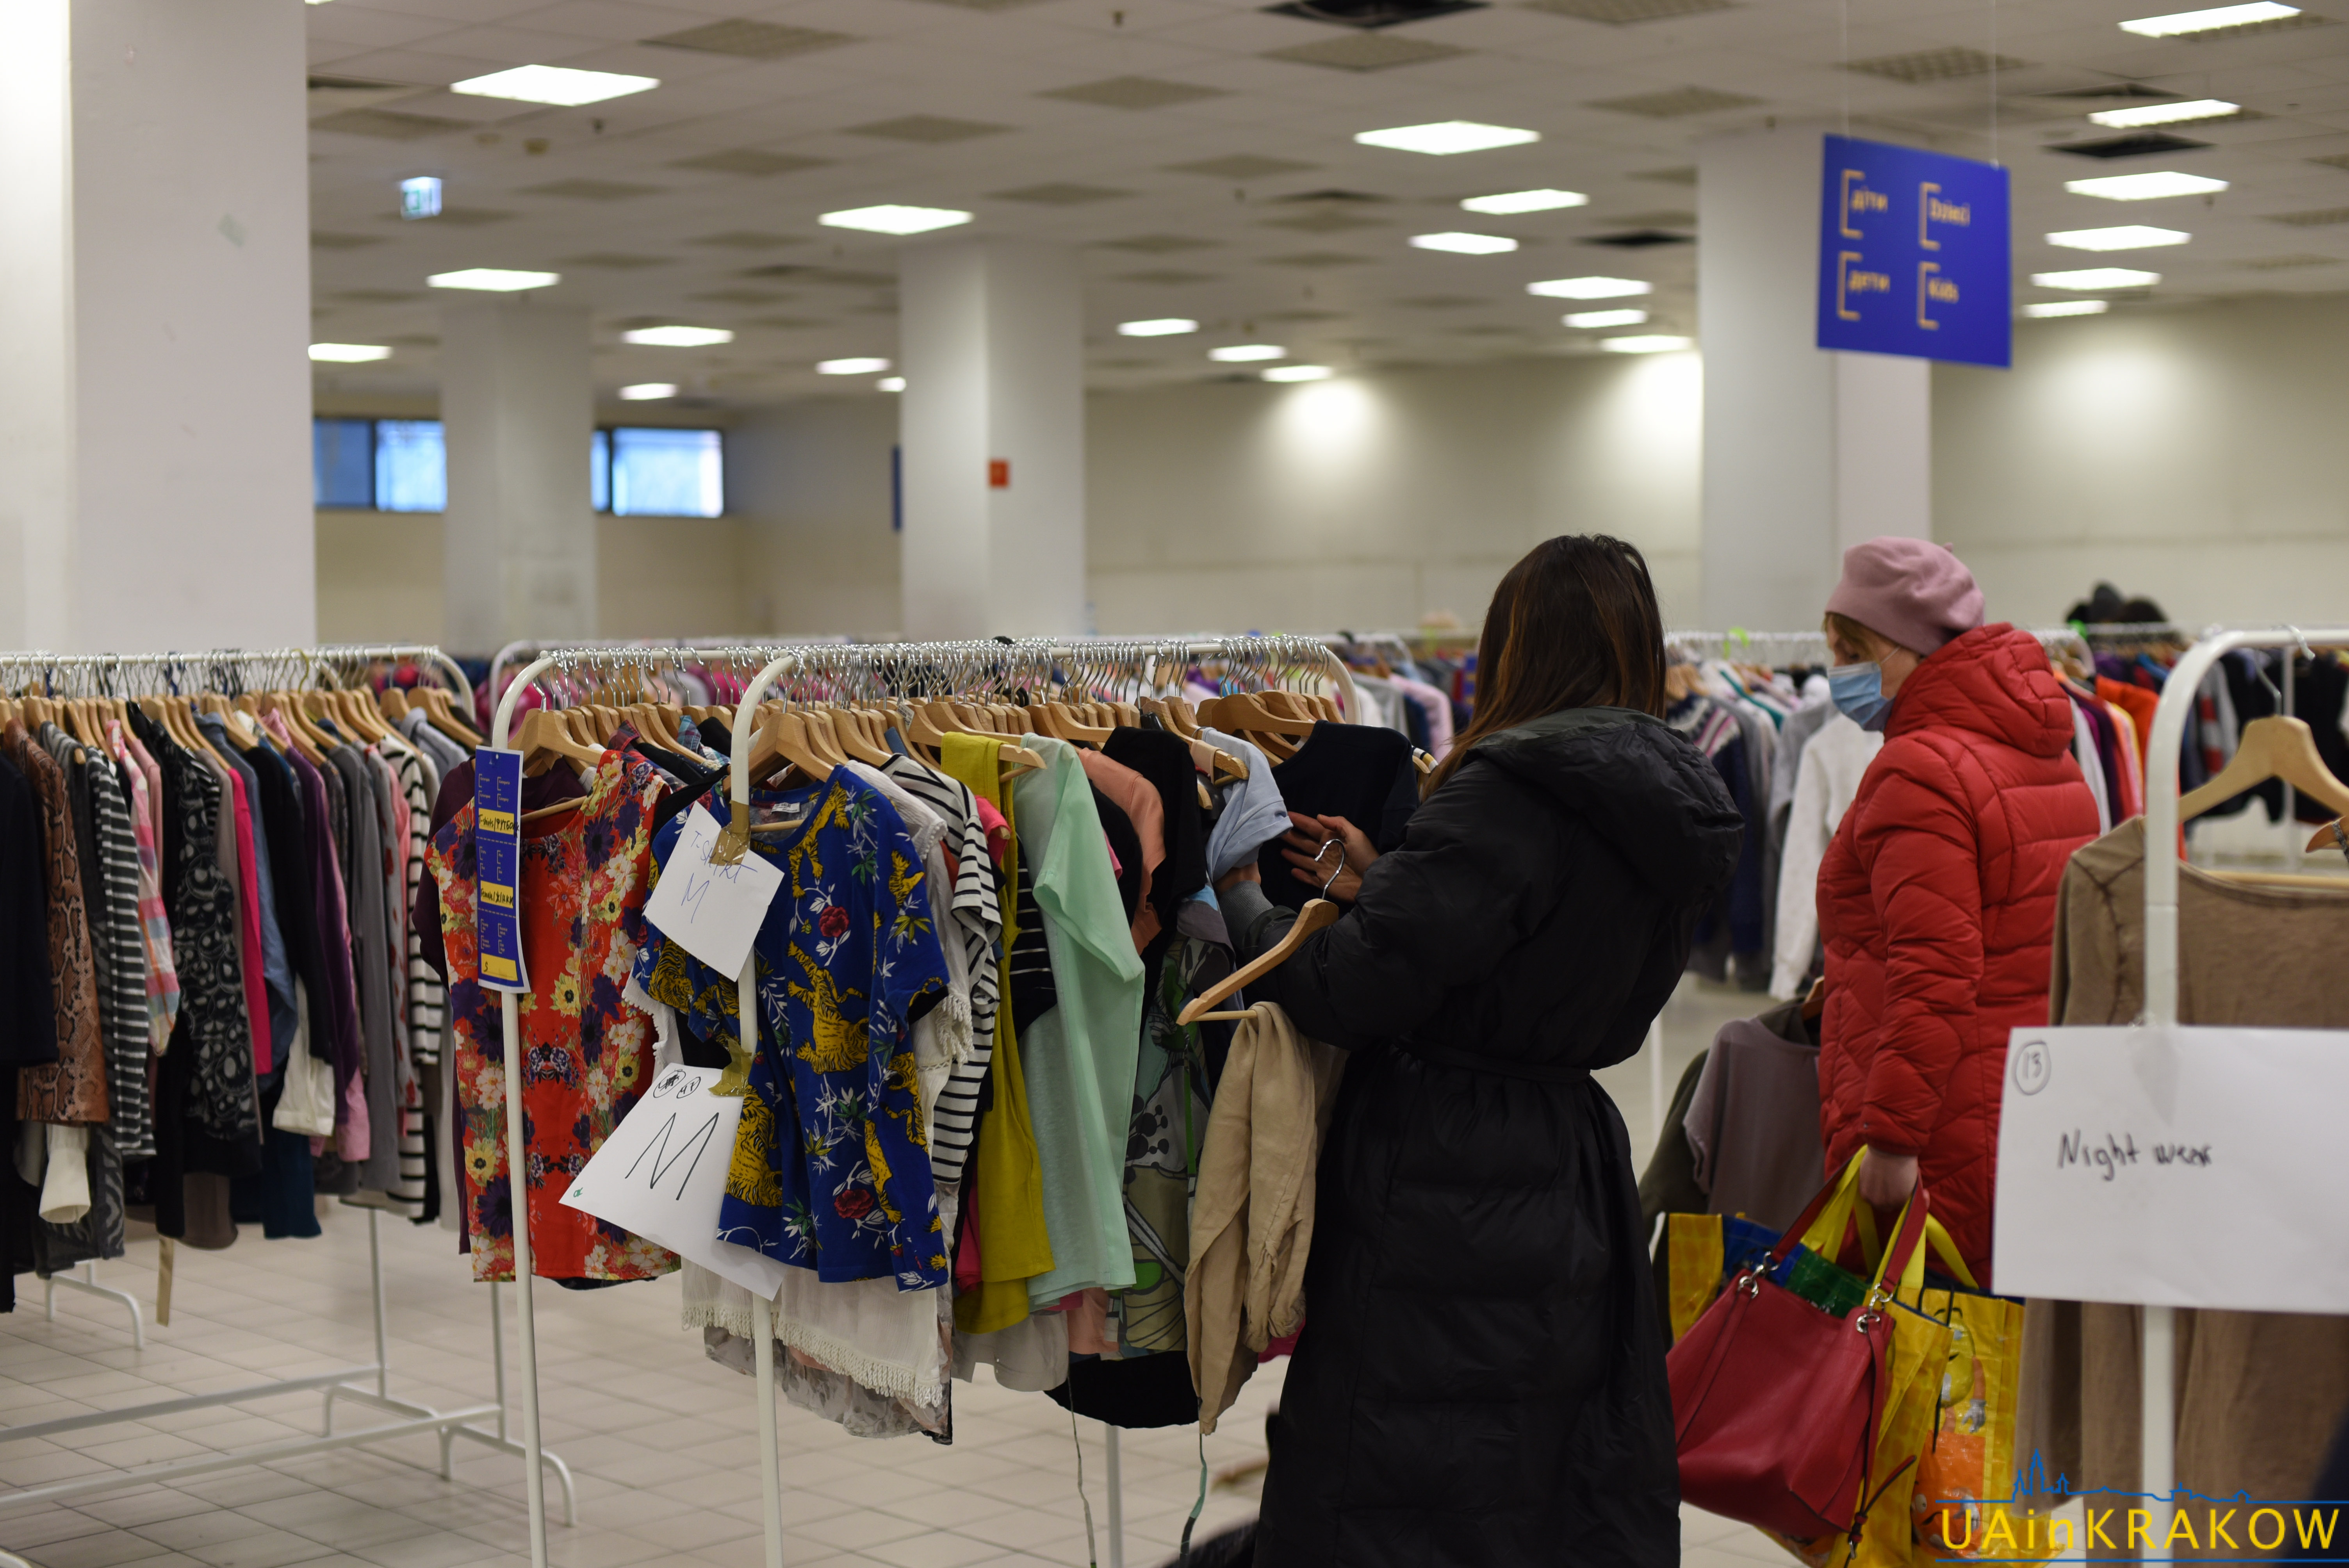 Шафа добра у ТЦ "Плаза" 一 безплатний одяг для біженців з України [ФОТО] dsc 8772